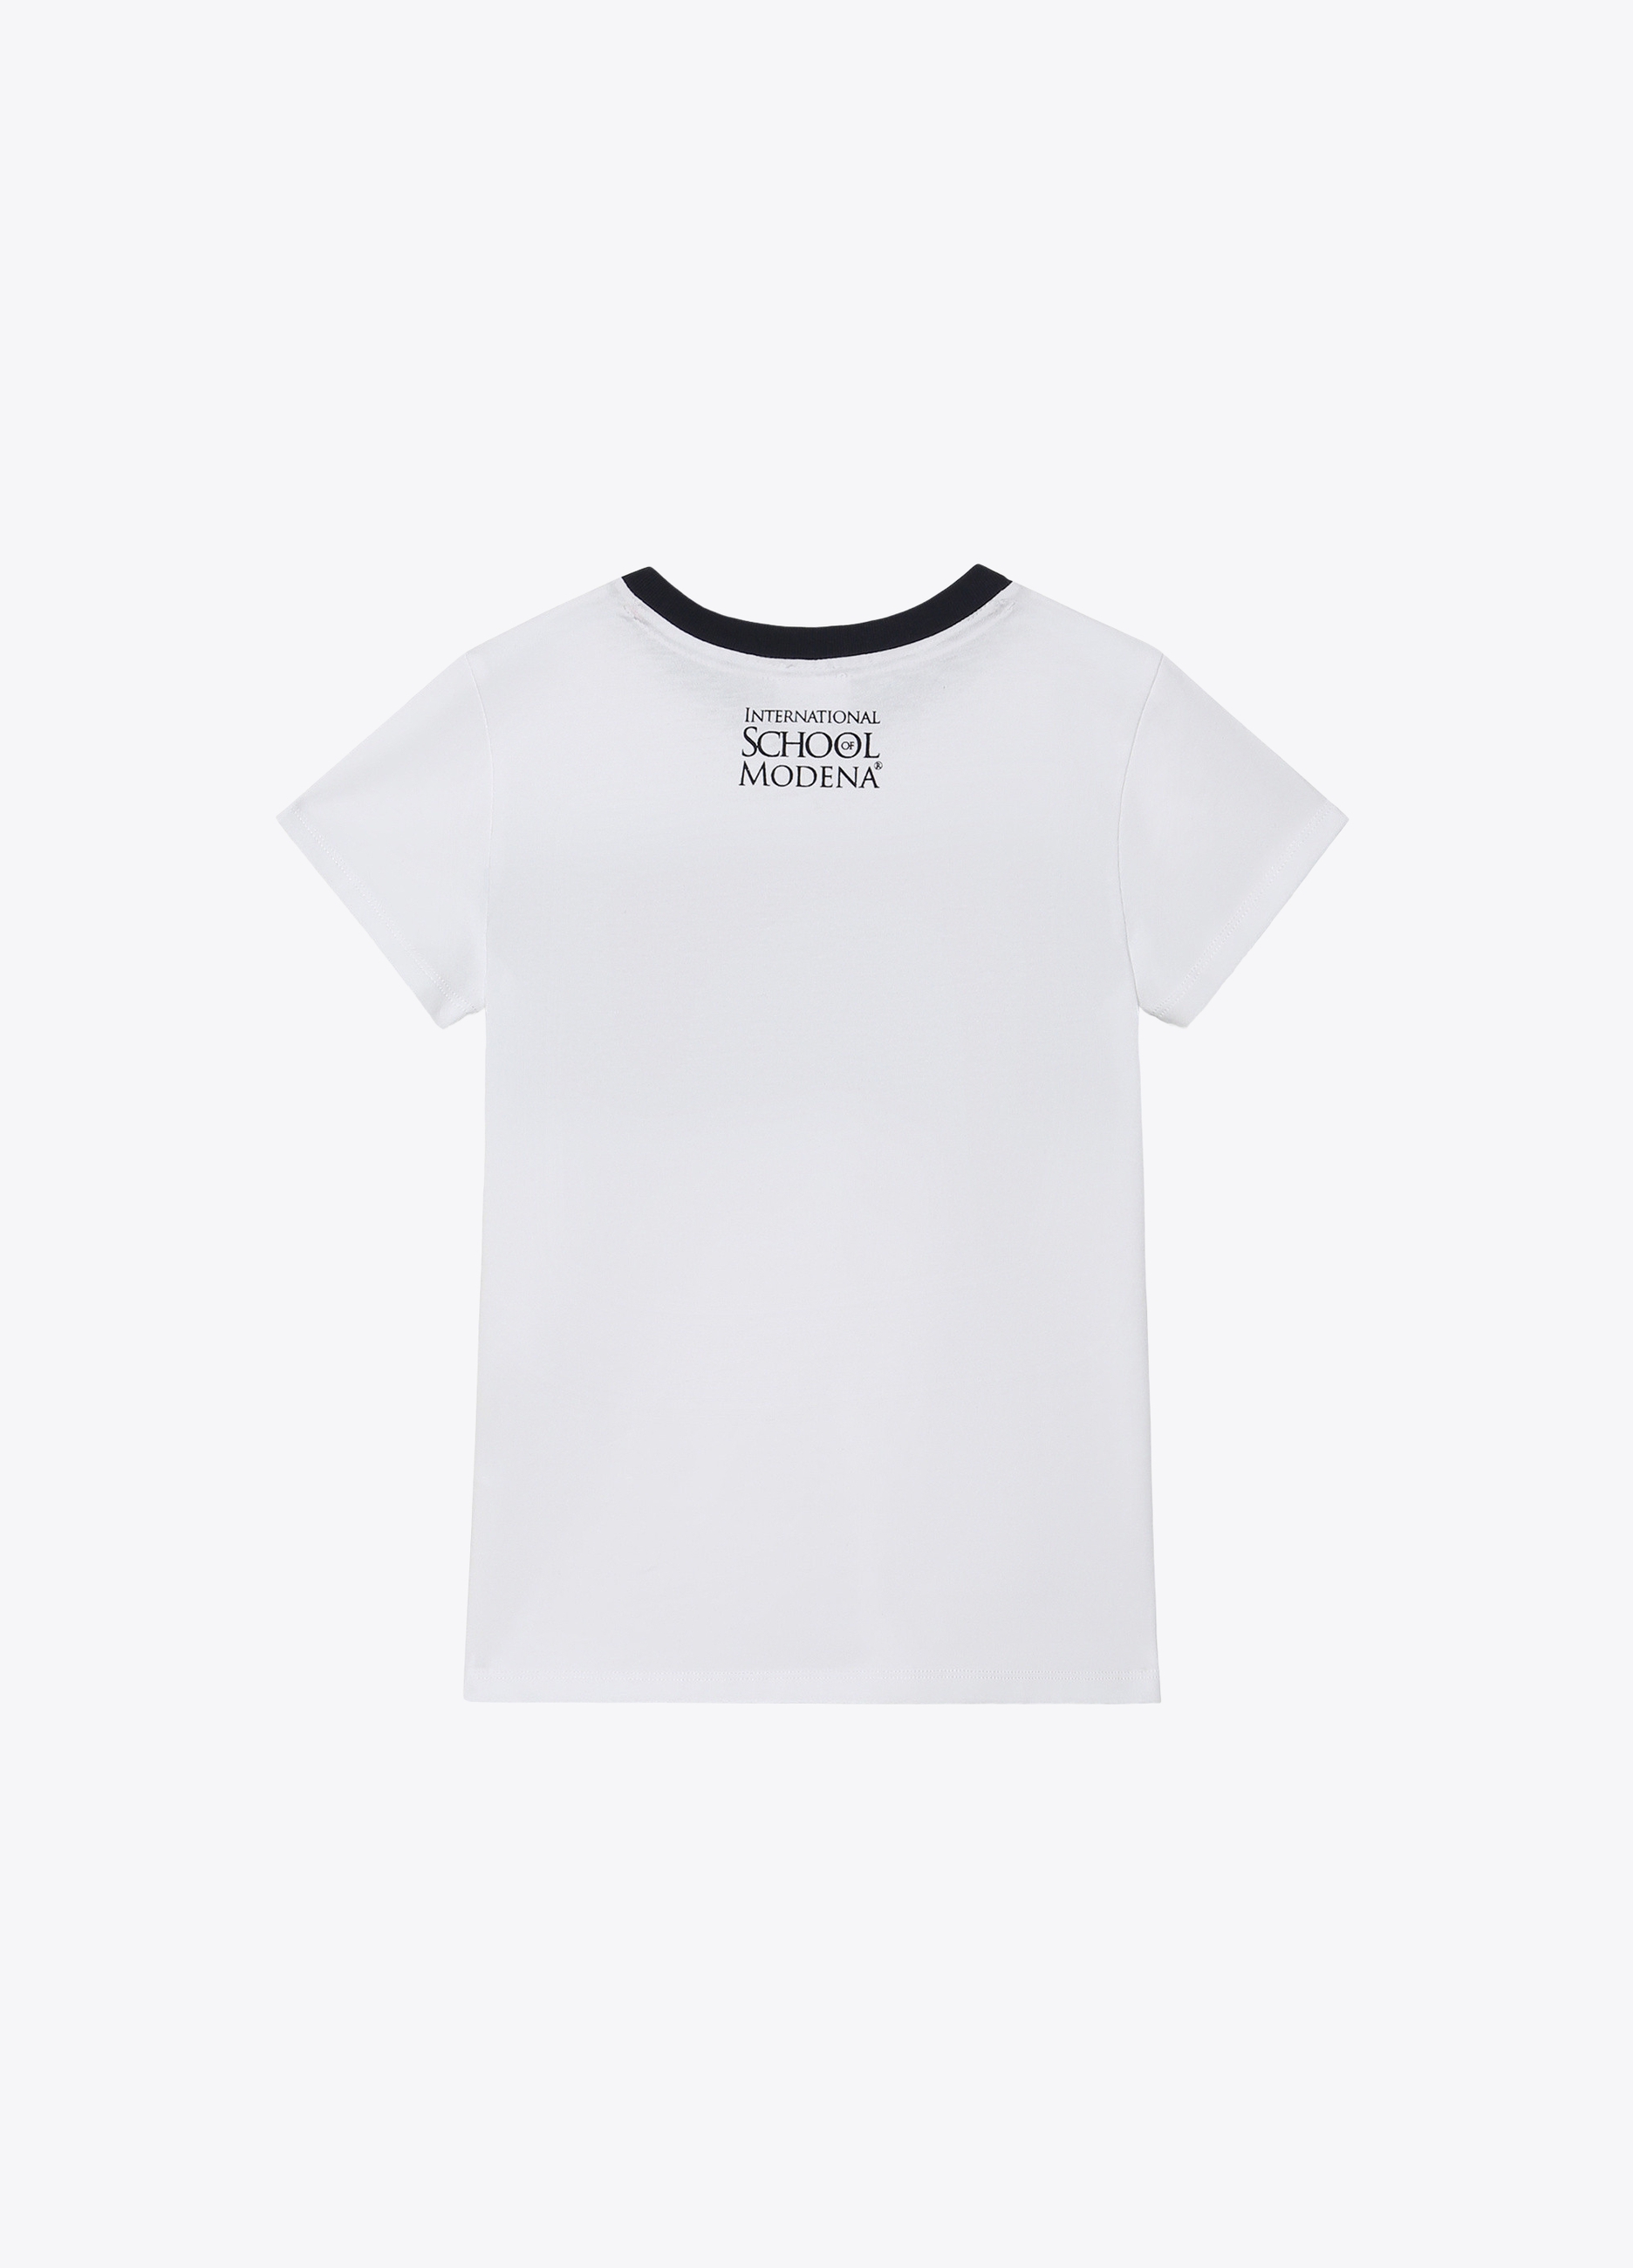 UNISEX - T-shirt a manica corta con inserto in contrasto.